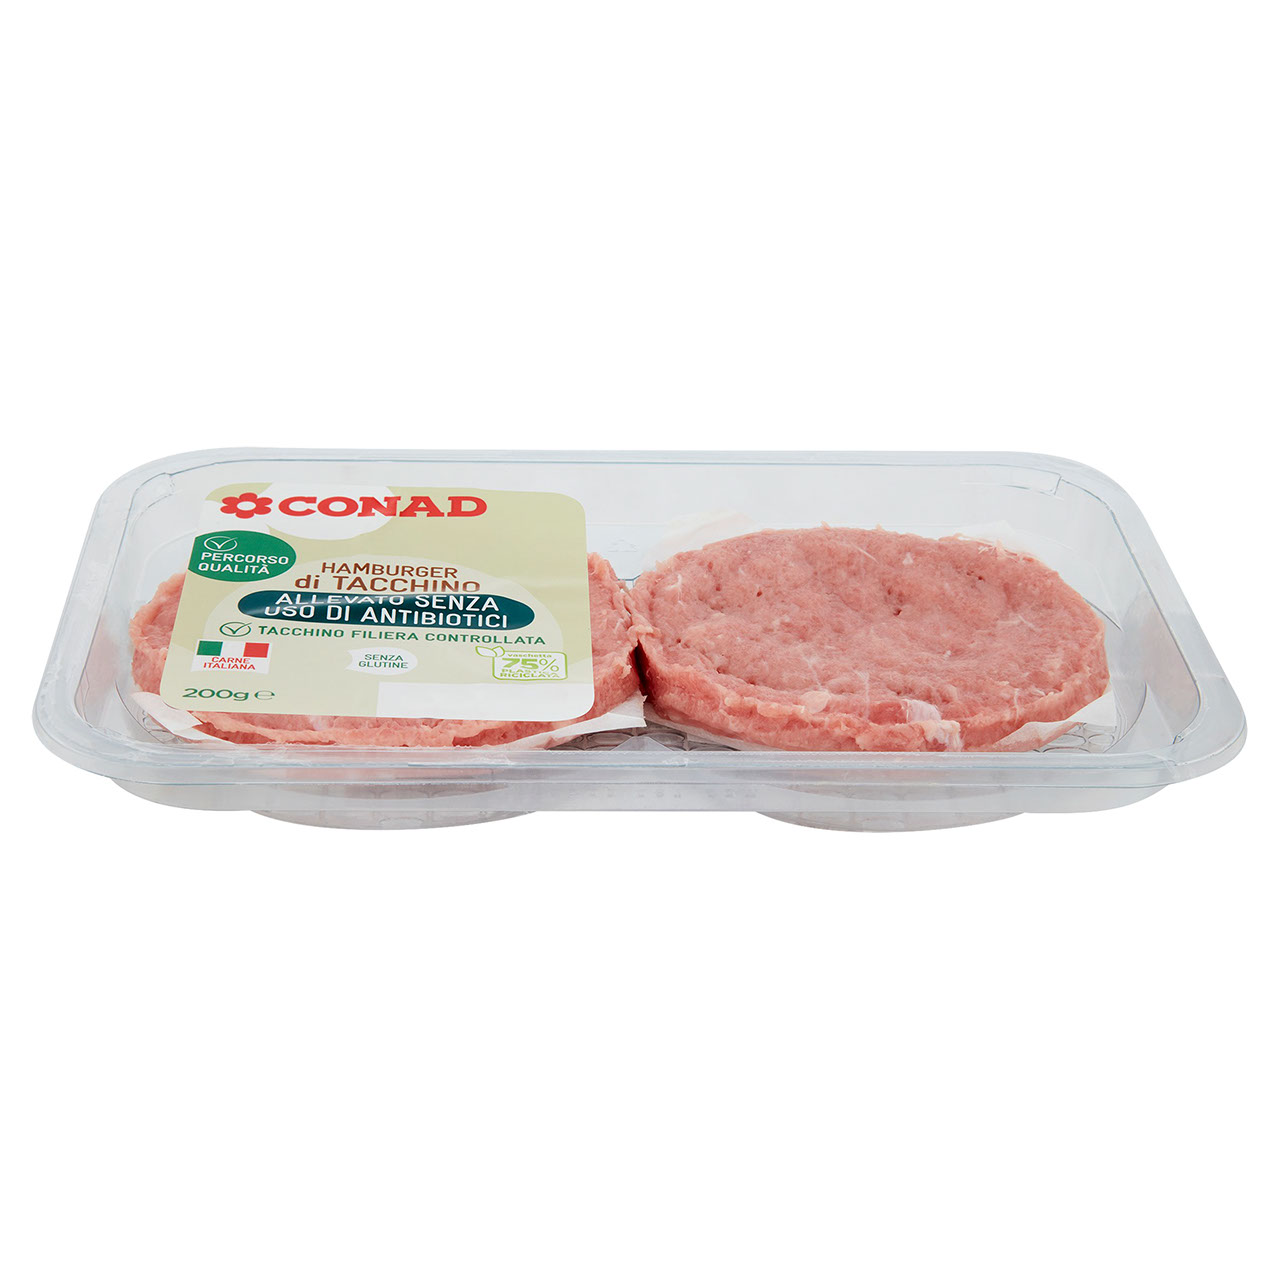 CONAD Percorso Qualità Allevato senza uso di antibiotici Hamburger di Tacchino 200 g